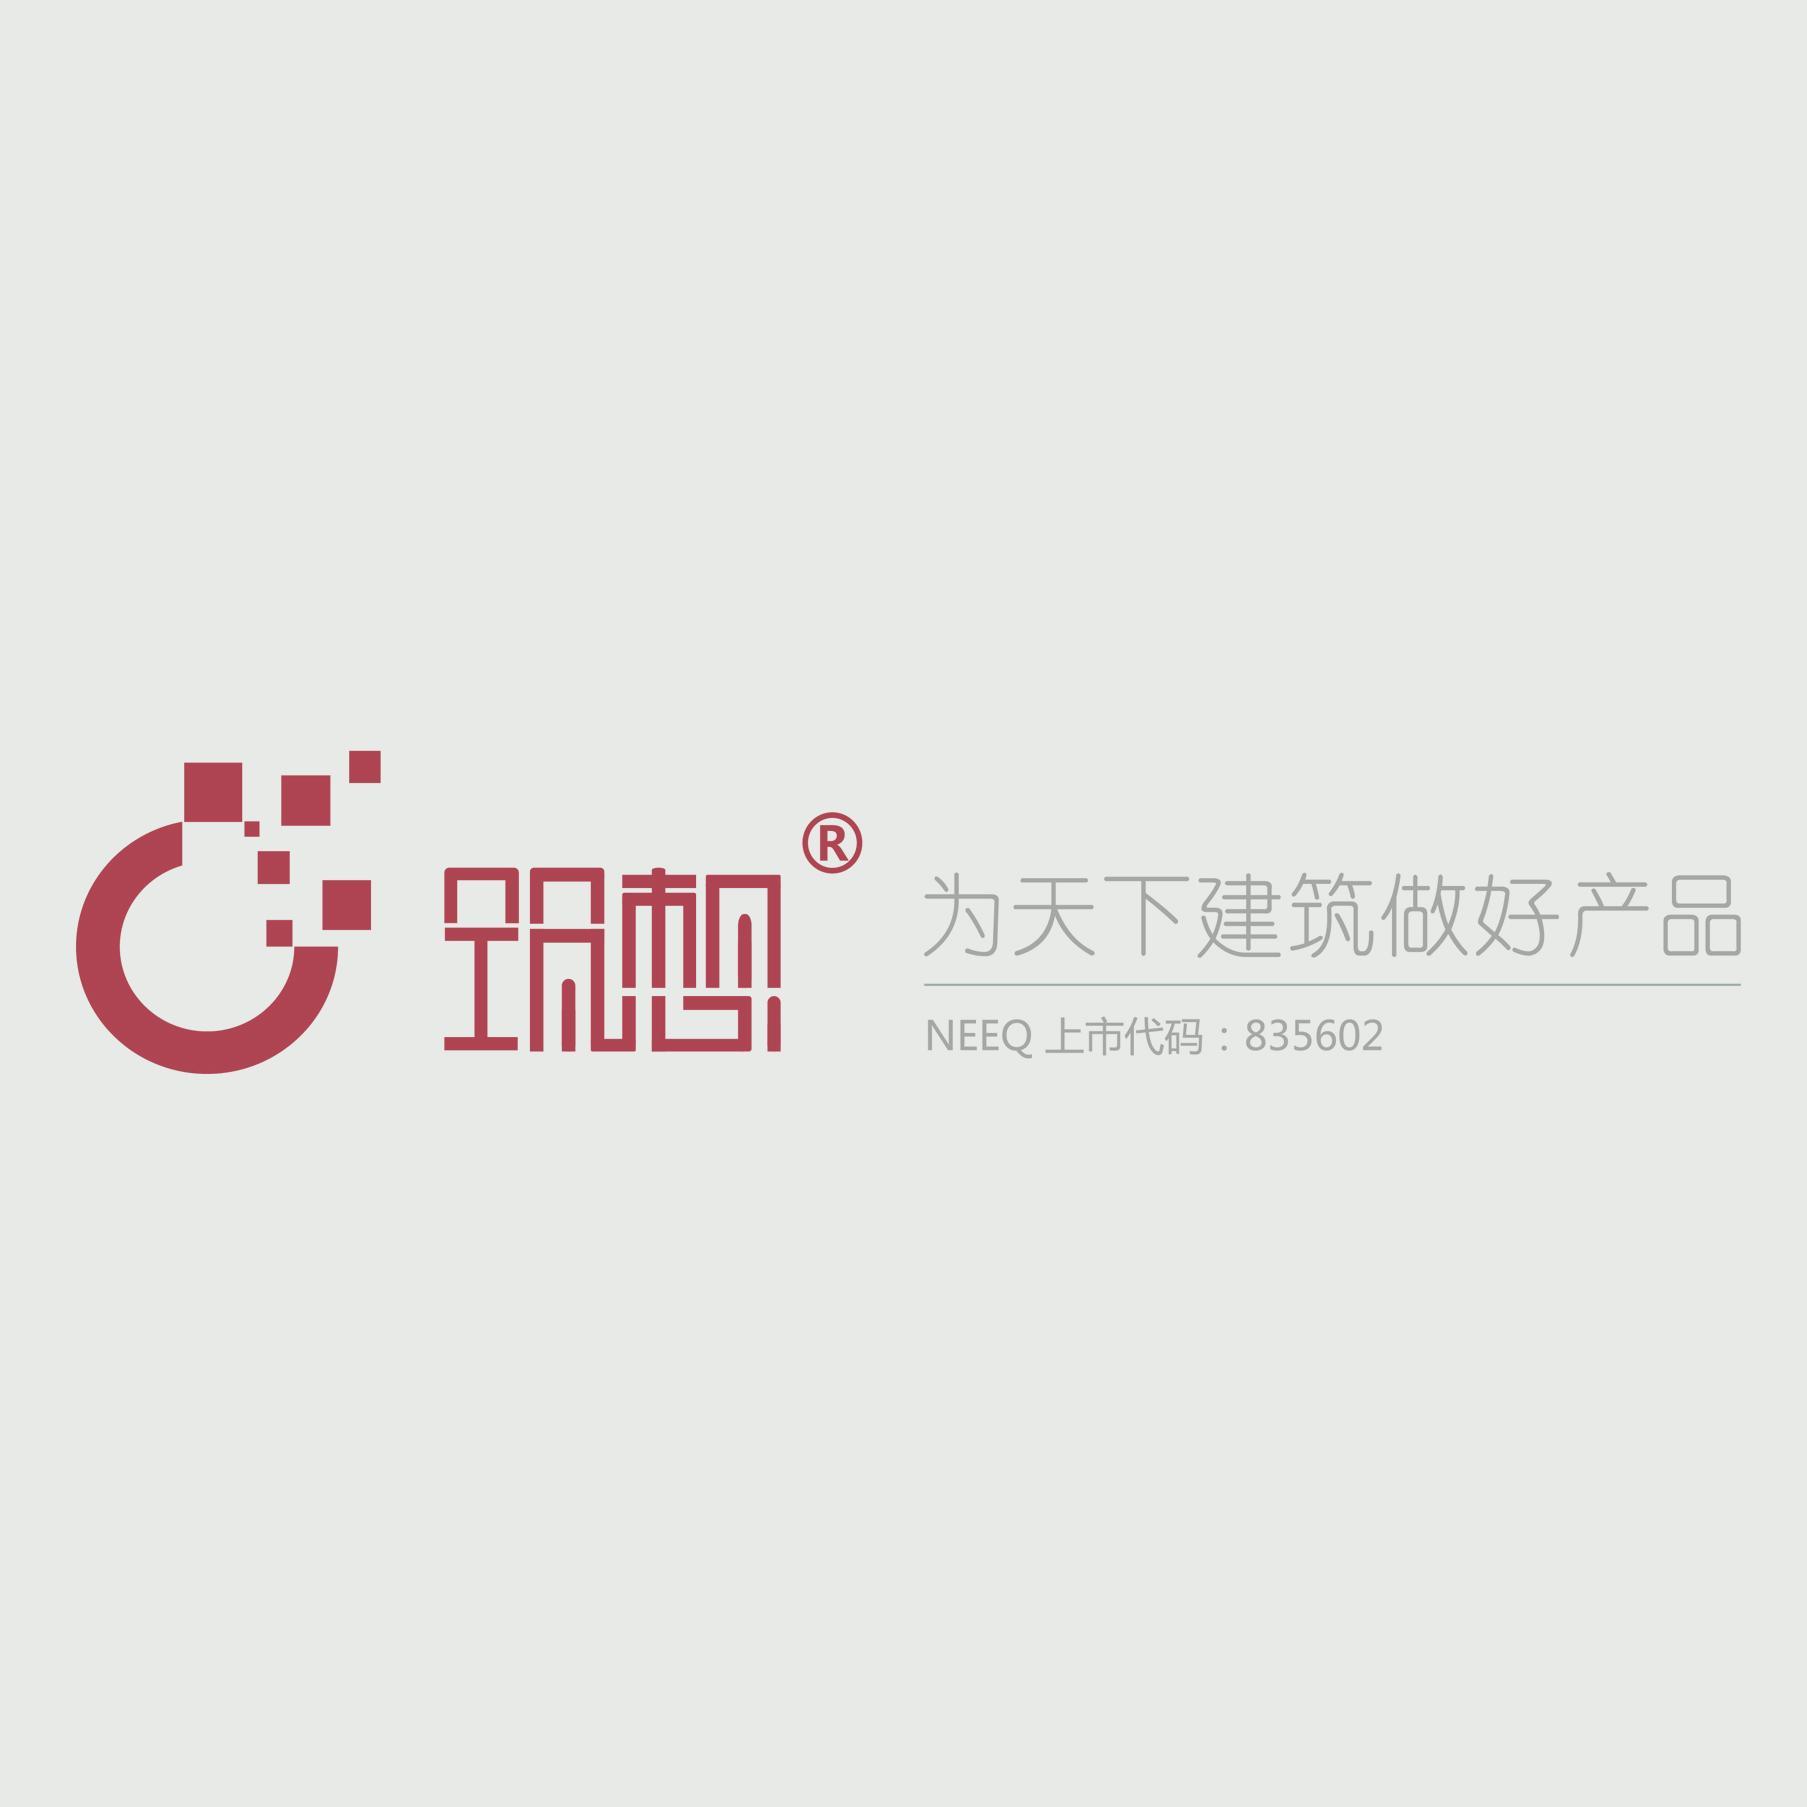 上海筑想信息科技股份有限公司